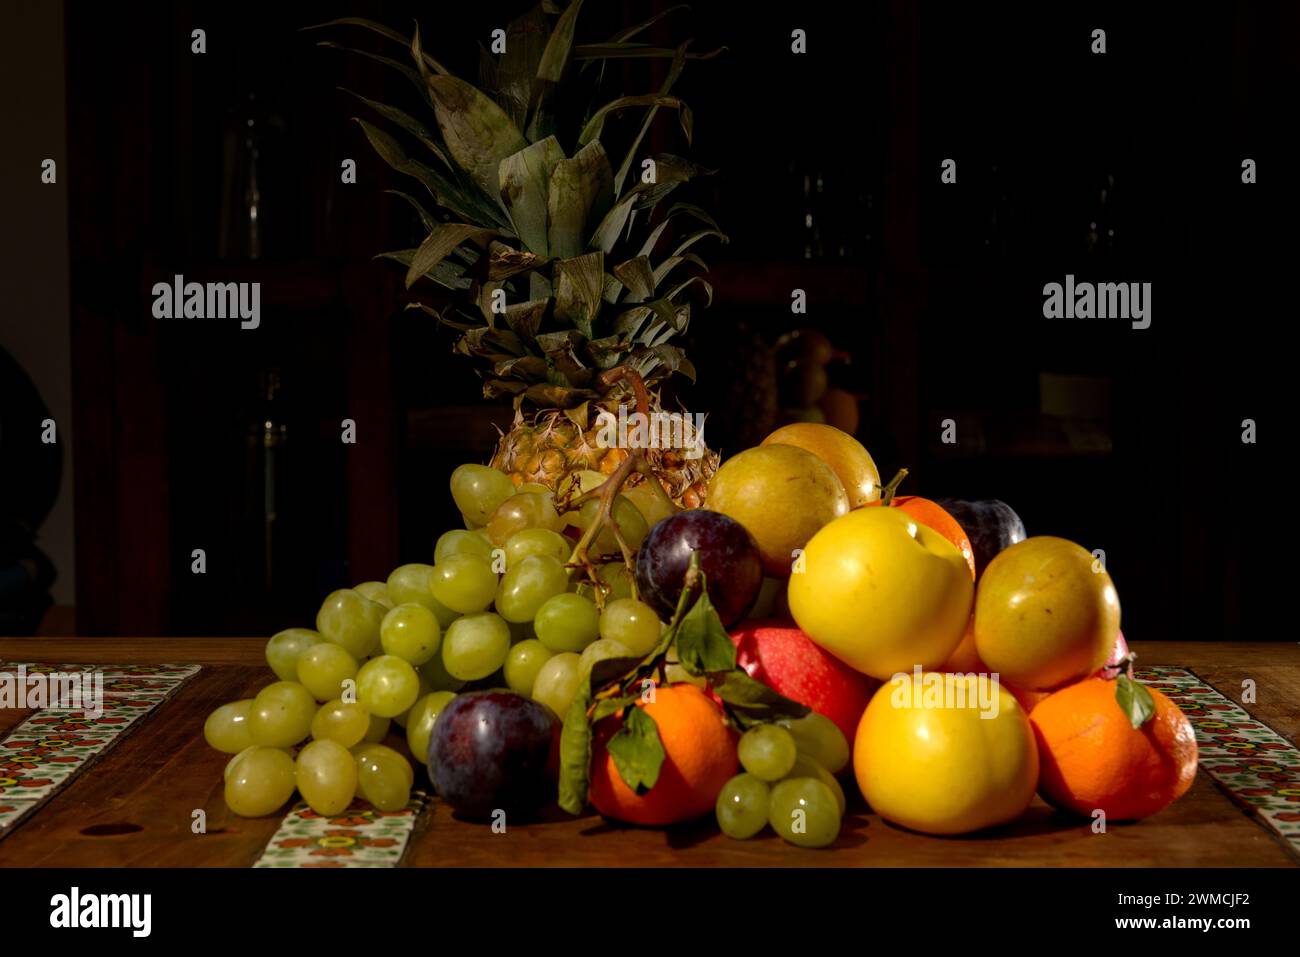 Gros plan d'une pile de raisins, de pommes, de satsumas, de prunes et d'un ananas sur une table Banque D'Images